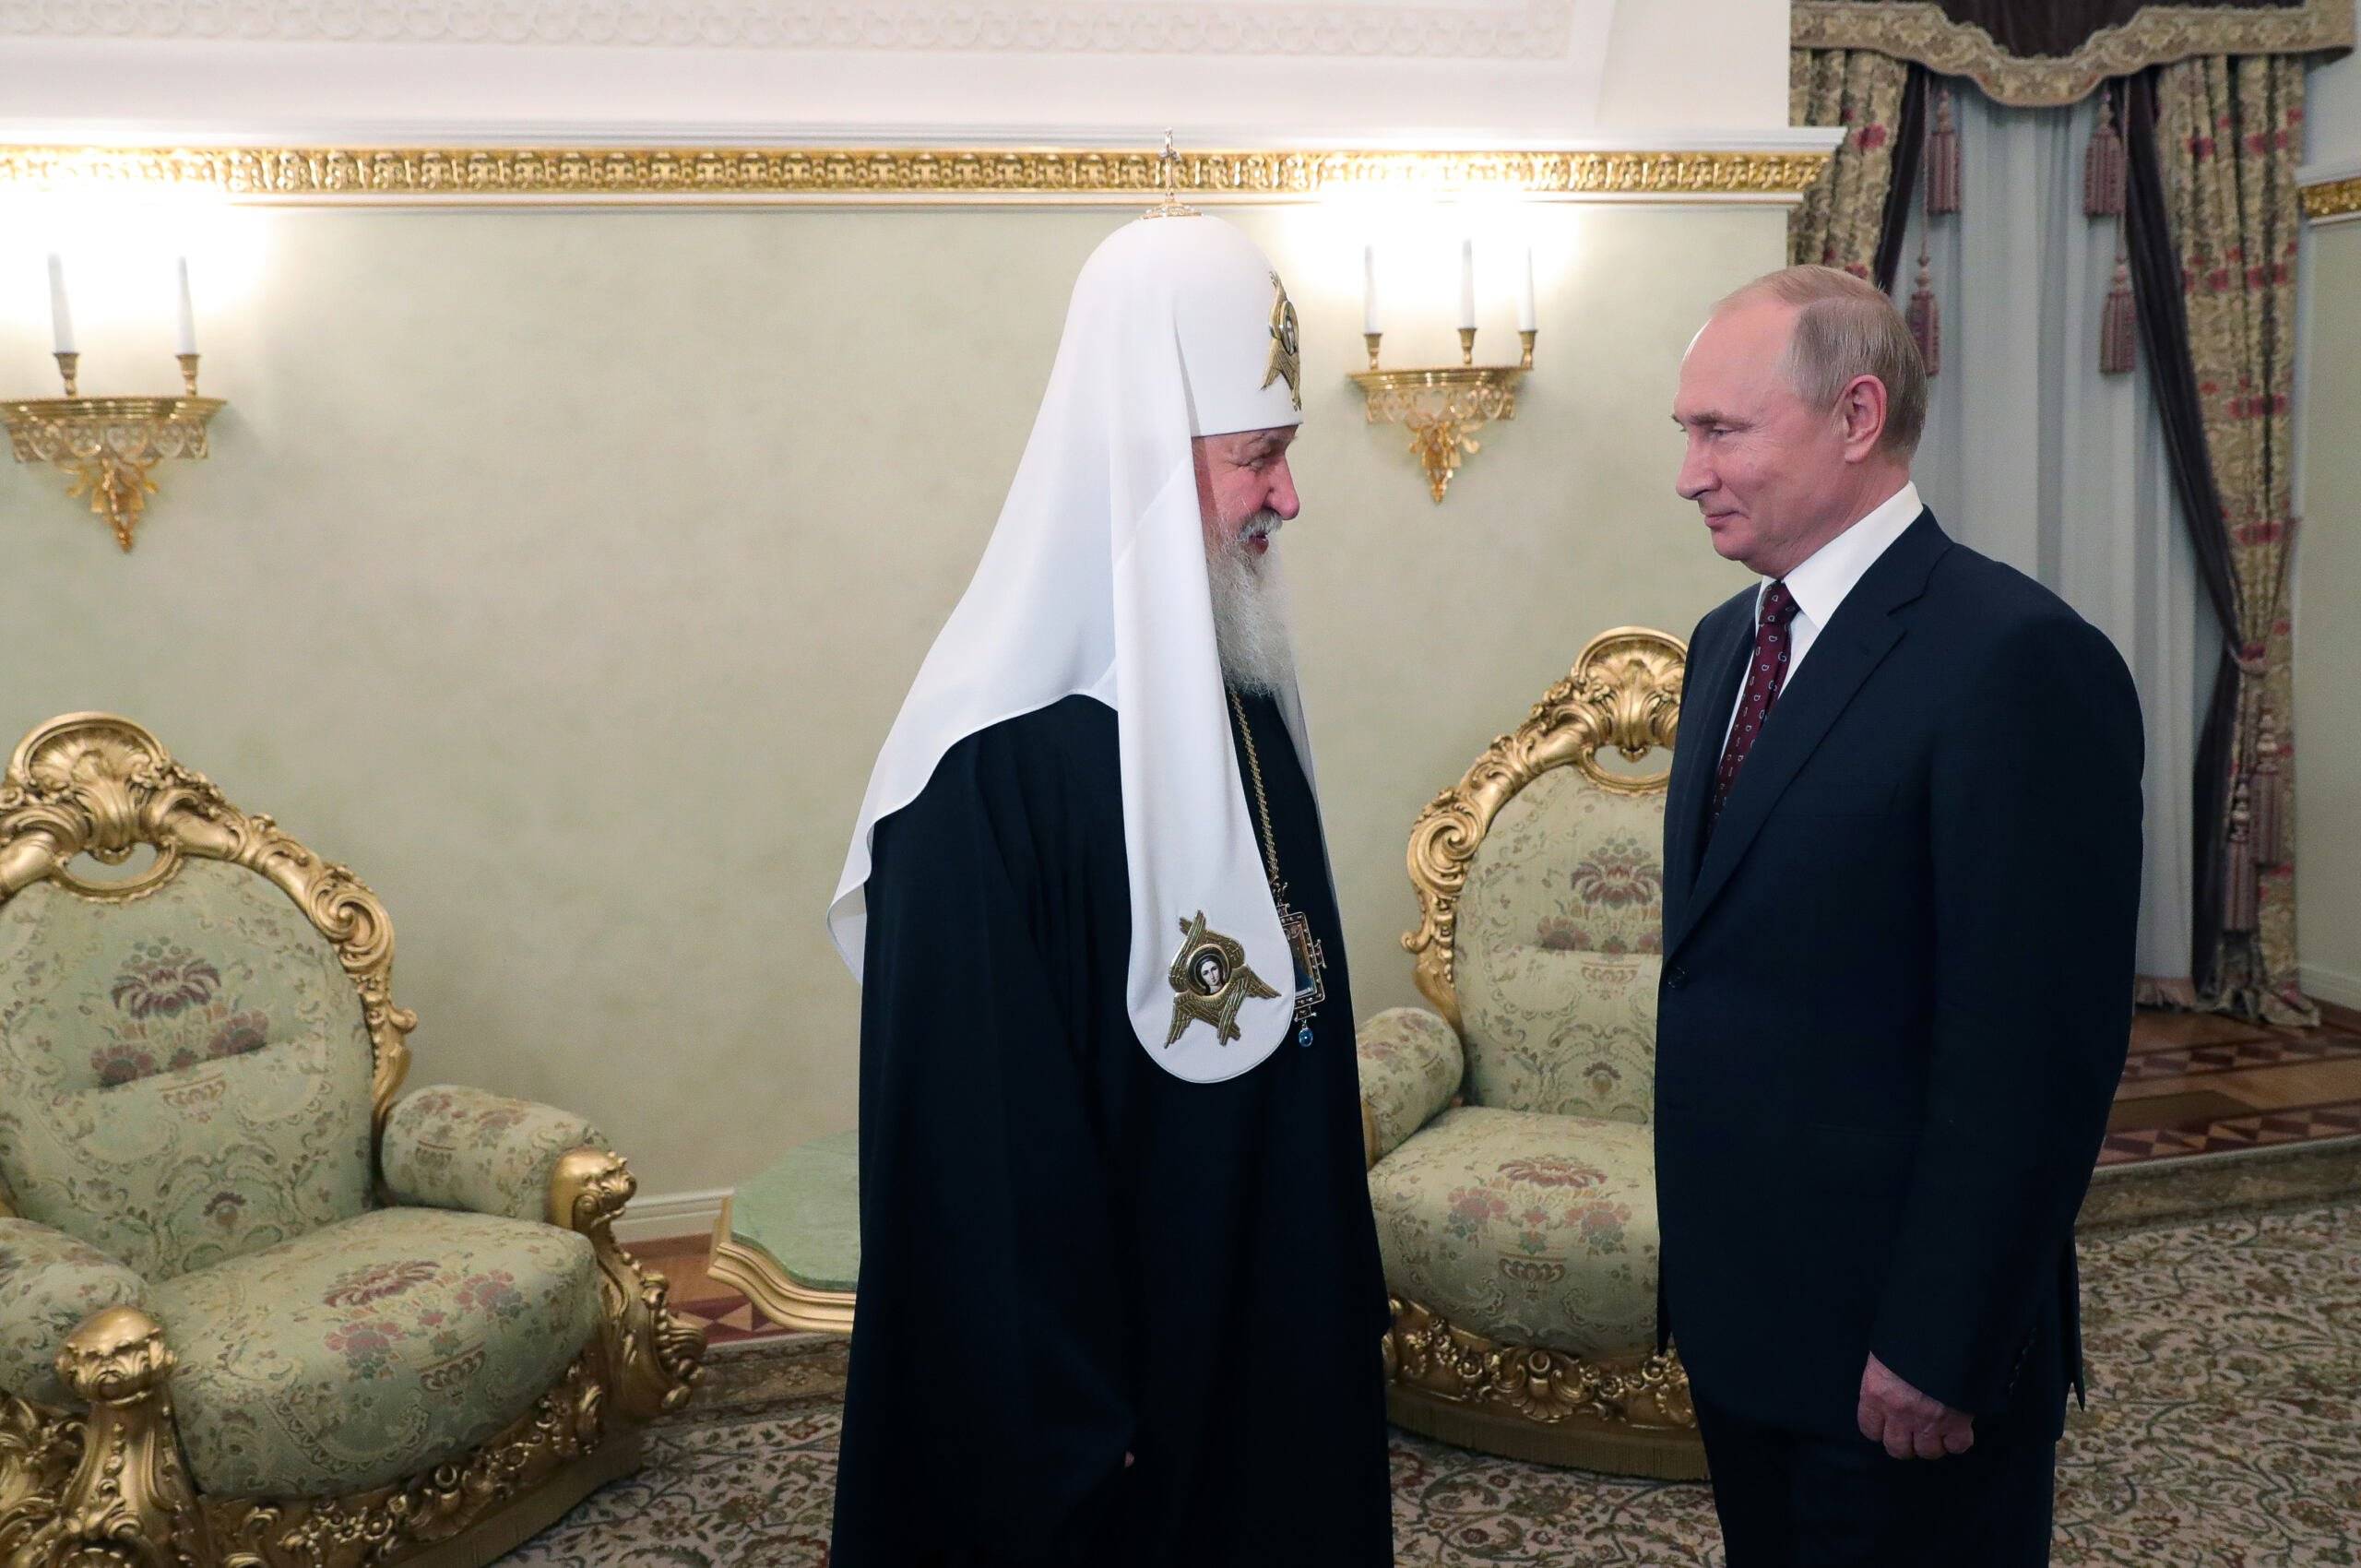 Prawosławny duchowny (Cyryl) i mężczyzna w garniturze (Putin)